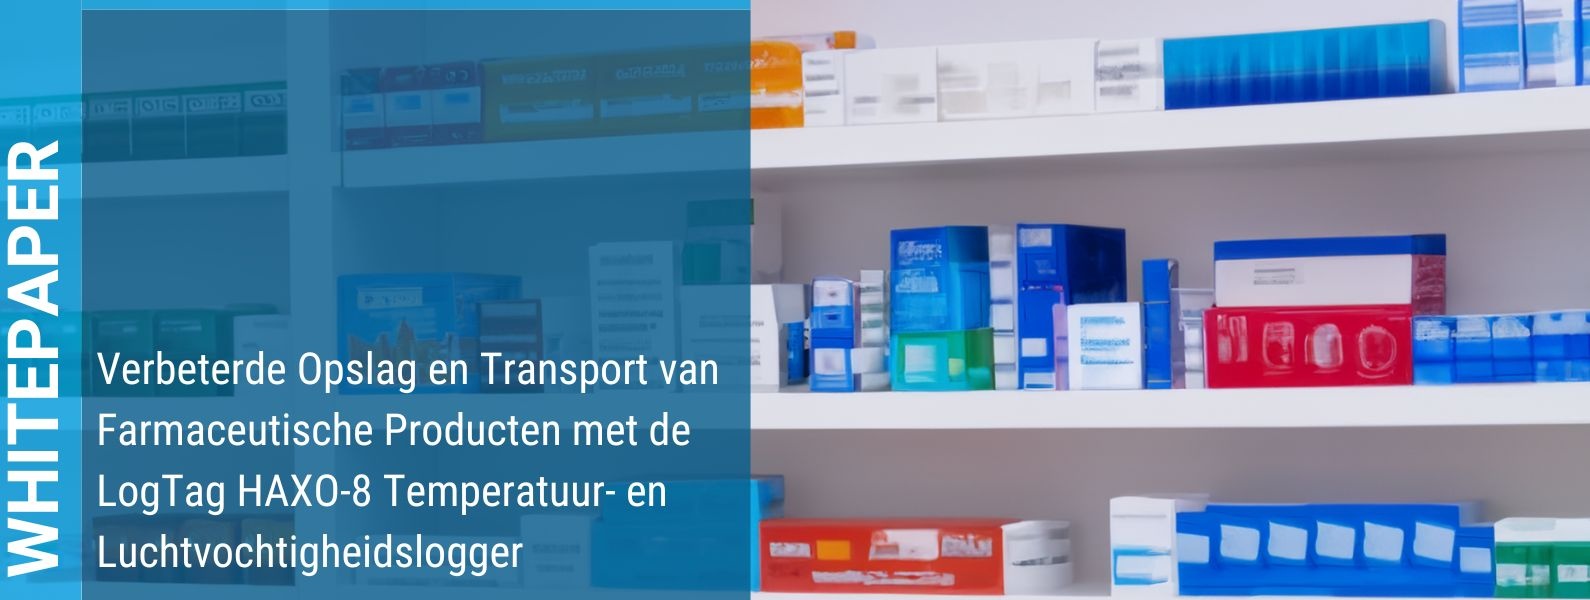 Whitepaper - Verbeterde Opslag en Transport van Farmaceutische Producten met de LogTag HAXO-8 Temperatuur- en Luchtvochtigheidslogger